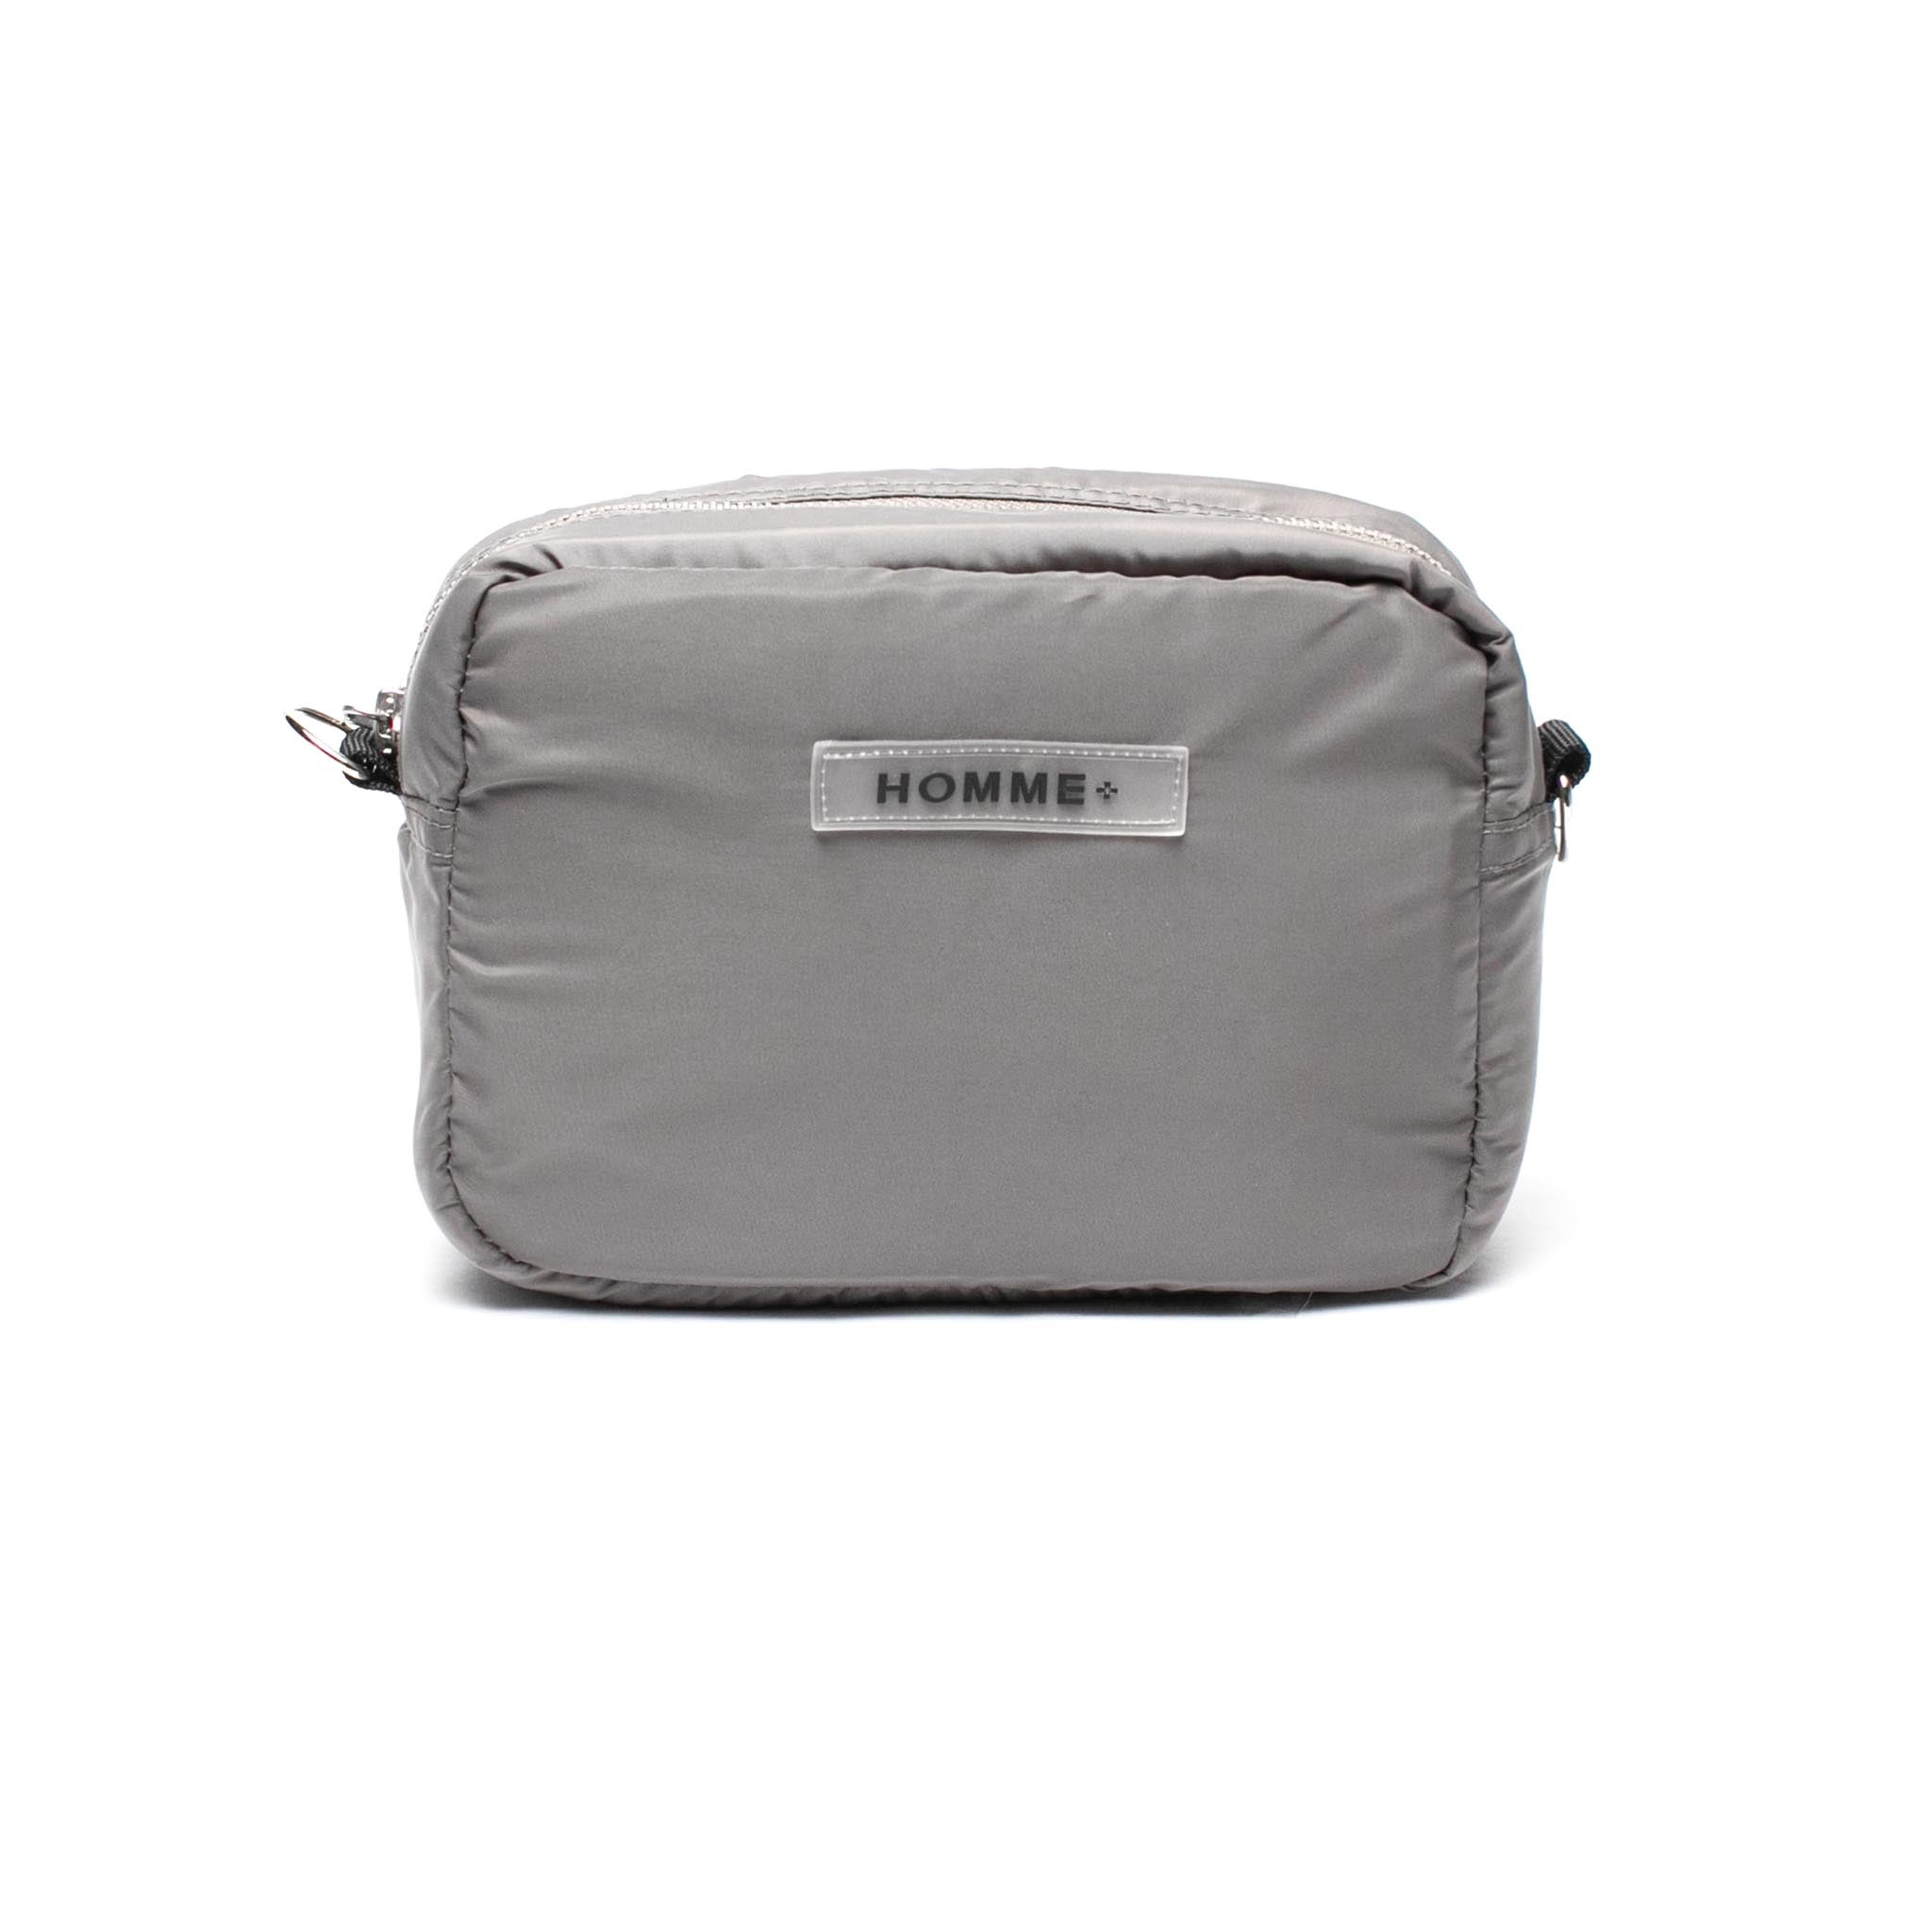 HOMME+ Rubber Logo Side Bag Grey